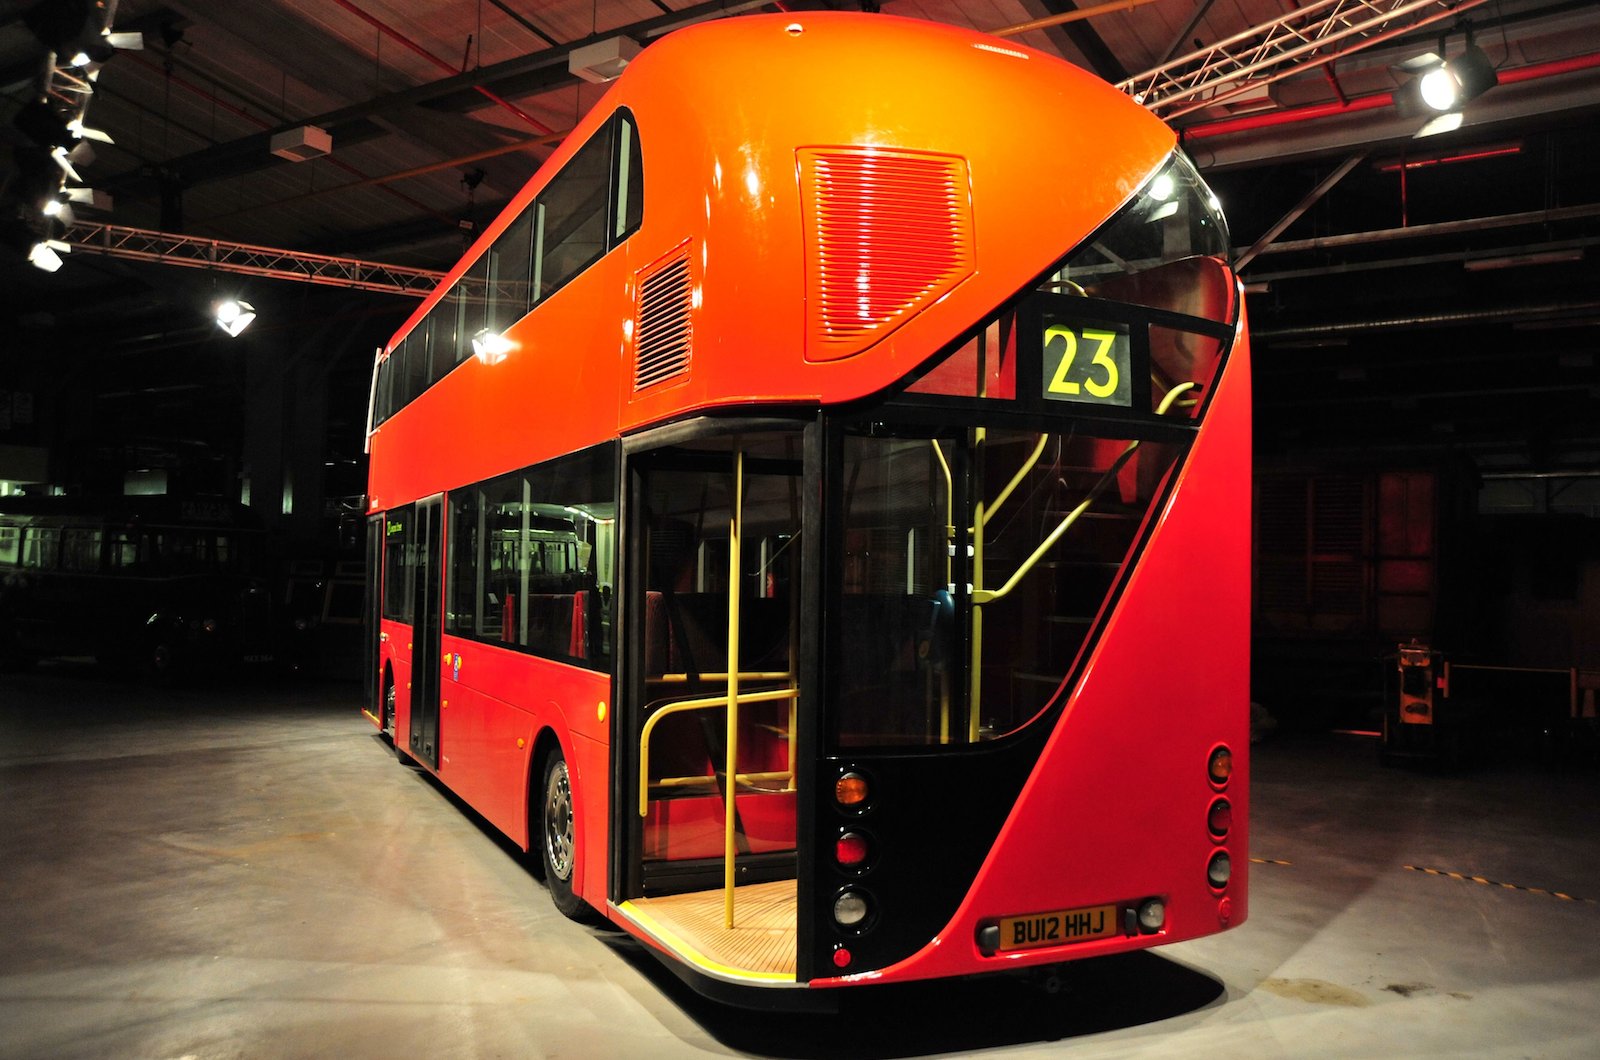 London's new bus unveiled Autocar